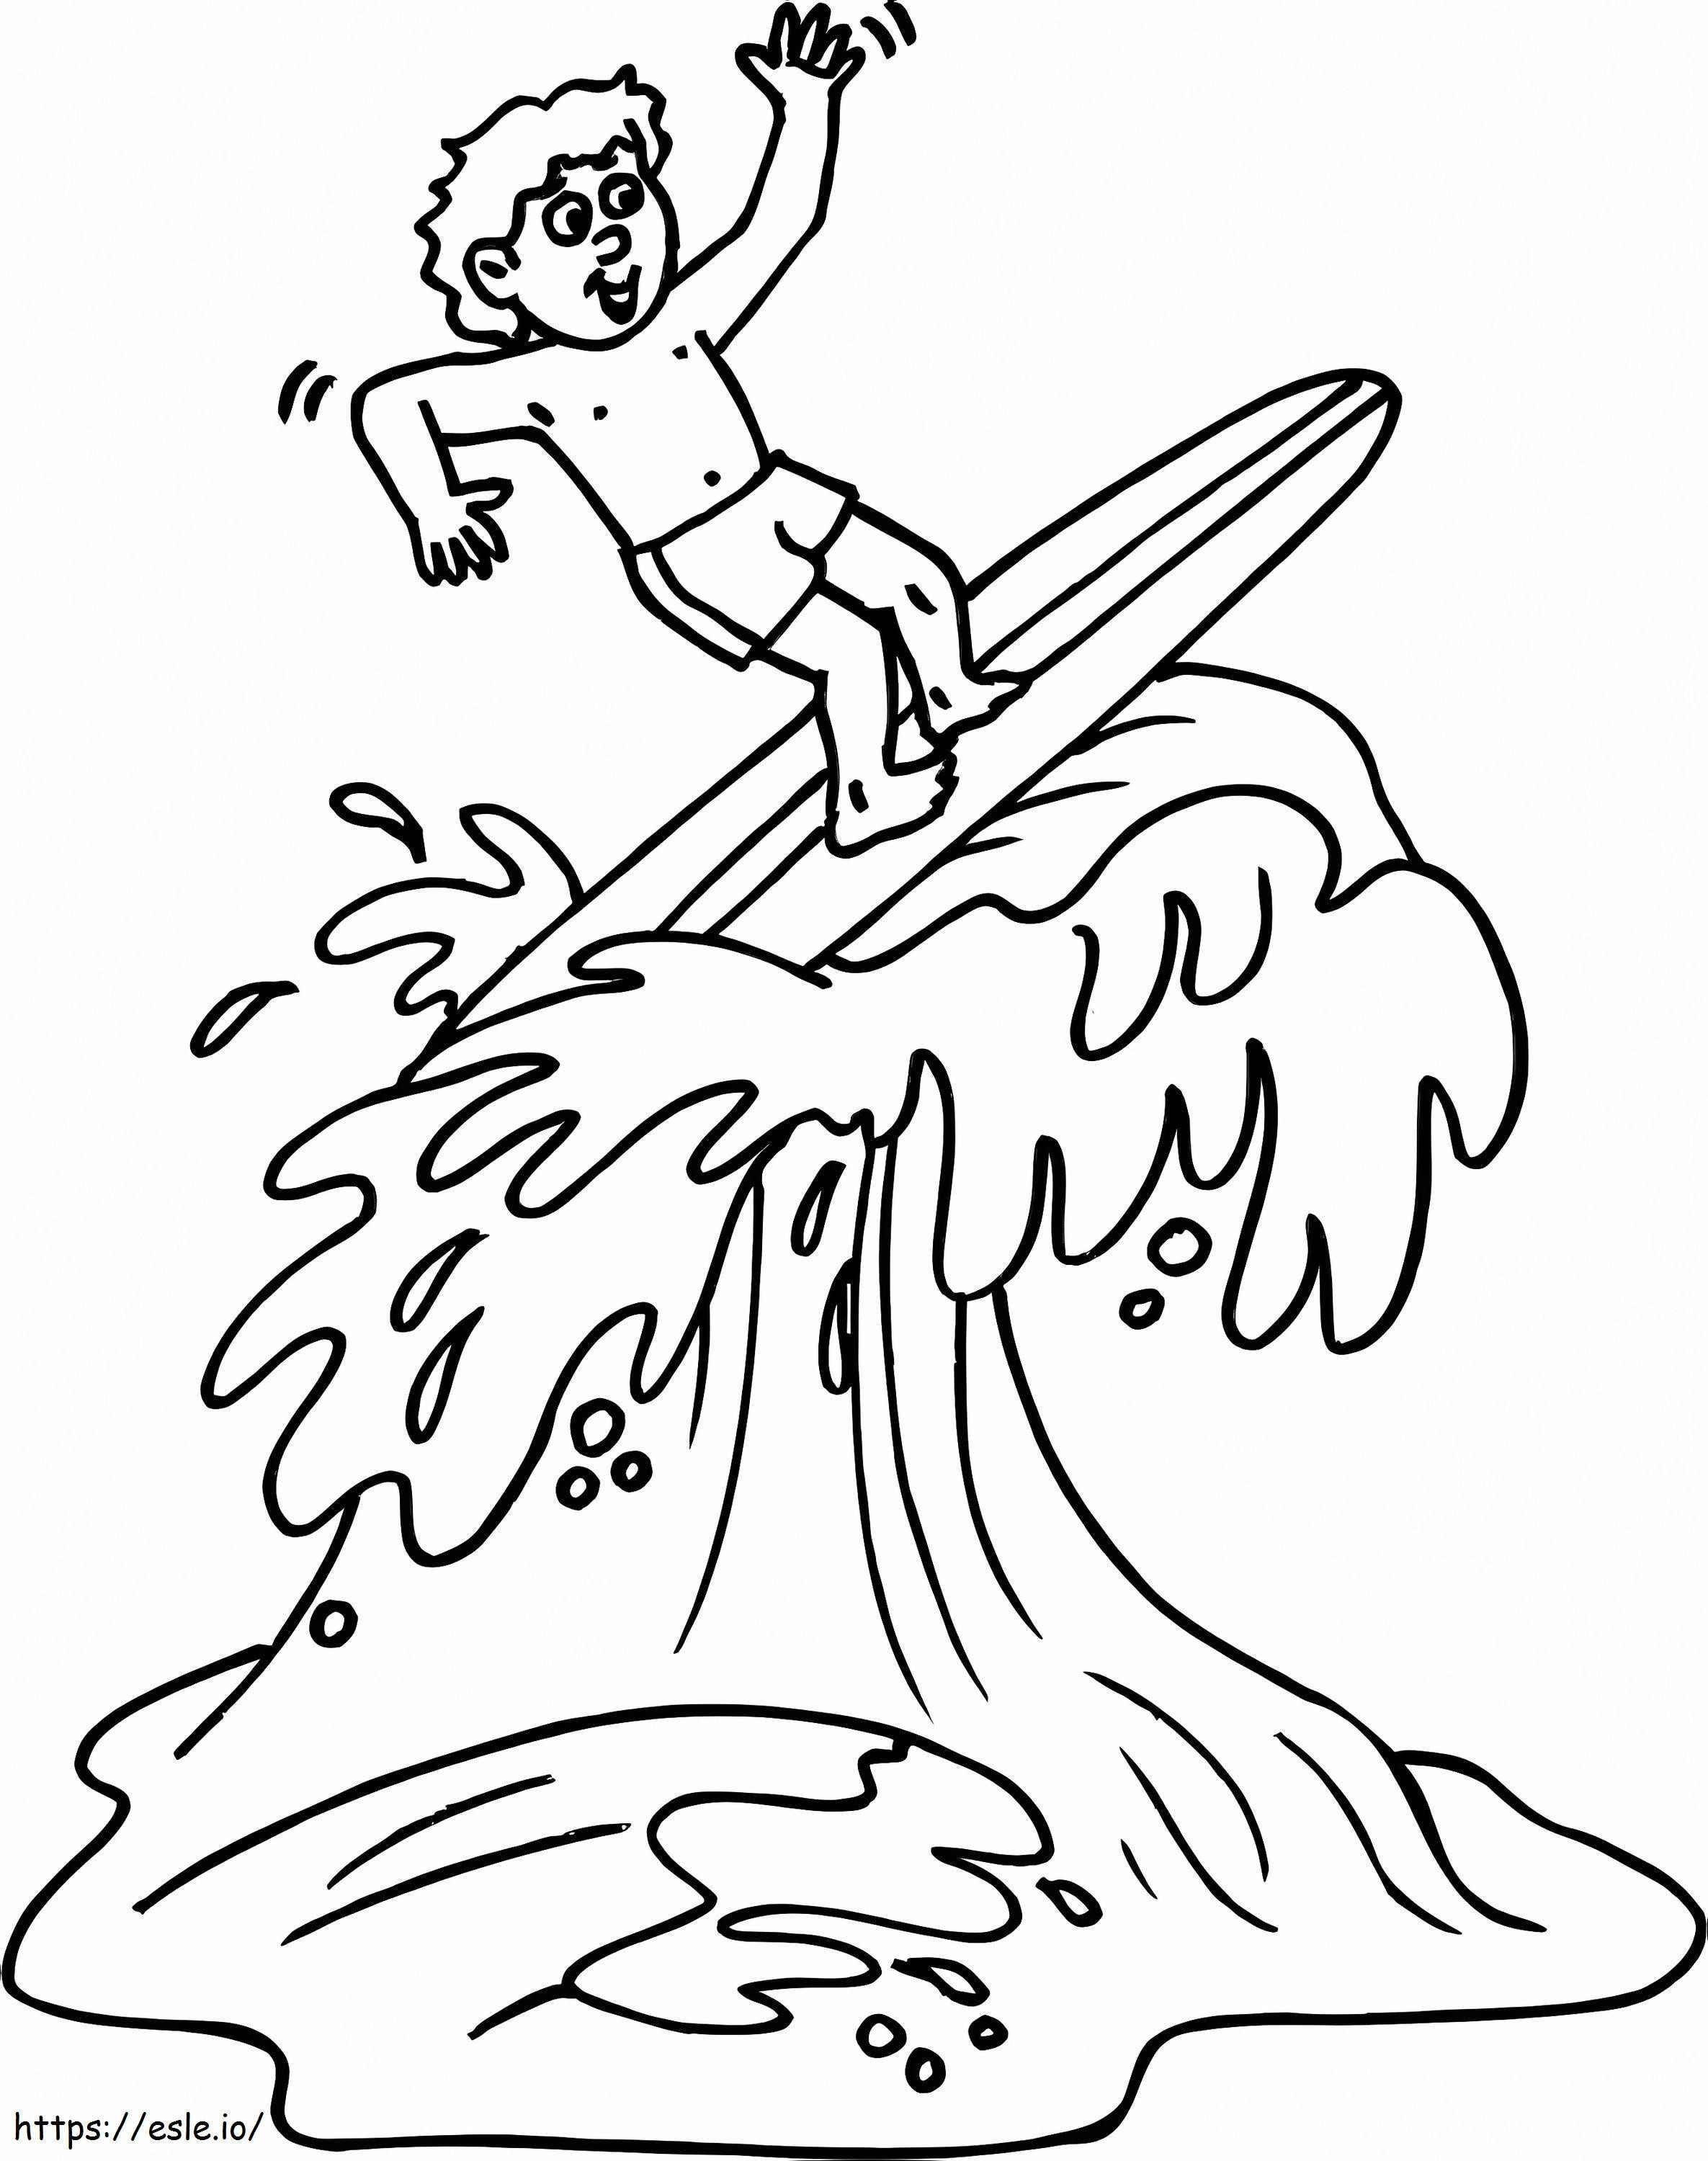 Chłopiec surfujący kolorowanka